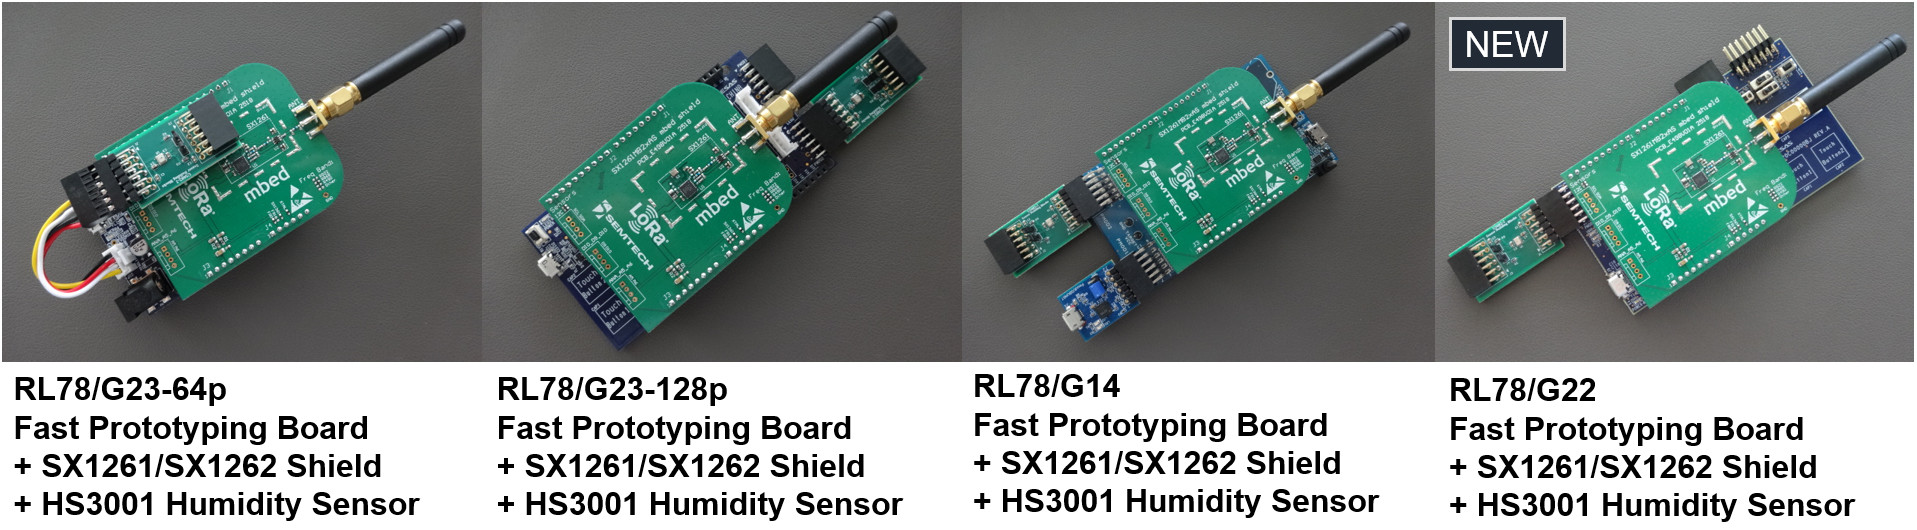 RL78/G23-64p, RL78/G23-128p, RL78/G14, RL78/G22 Fast Prototyping Board